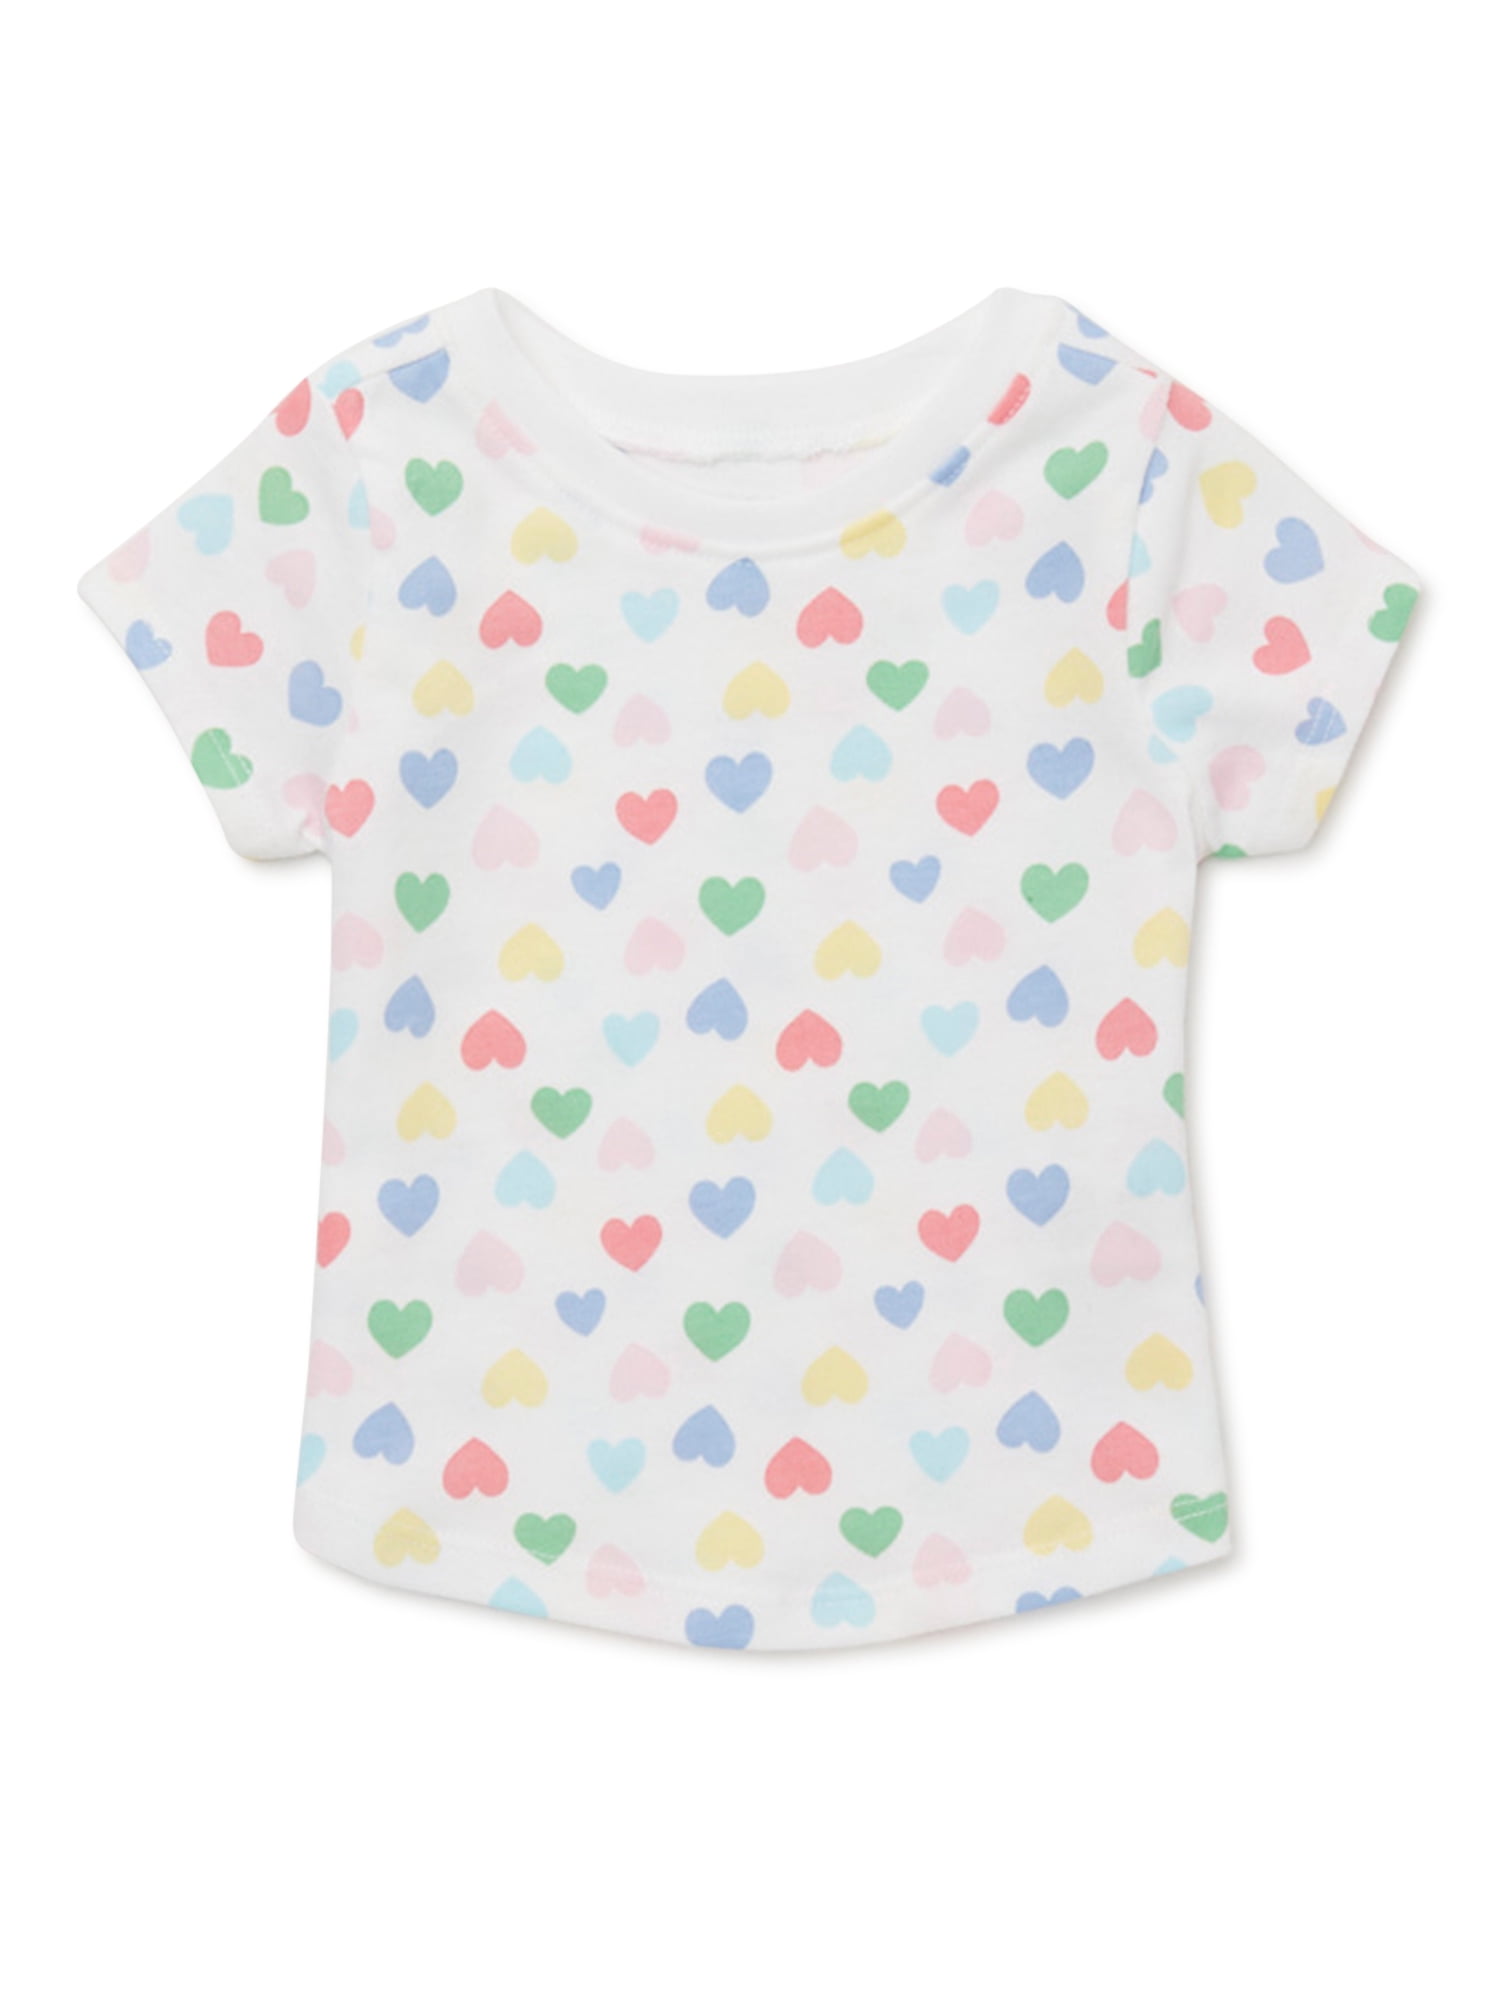 Garanimals Baby Girls Print Tee with Short Sleeves, Sizes 0M-24M ...